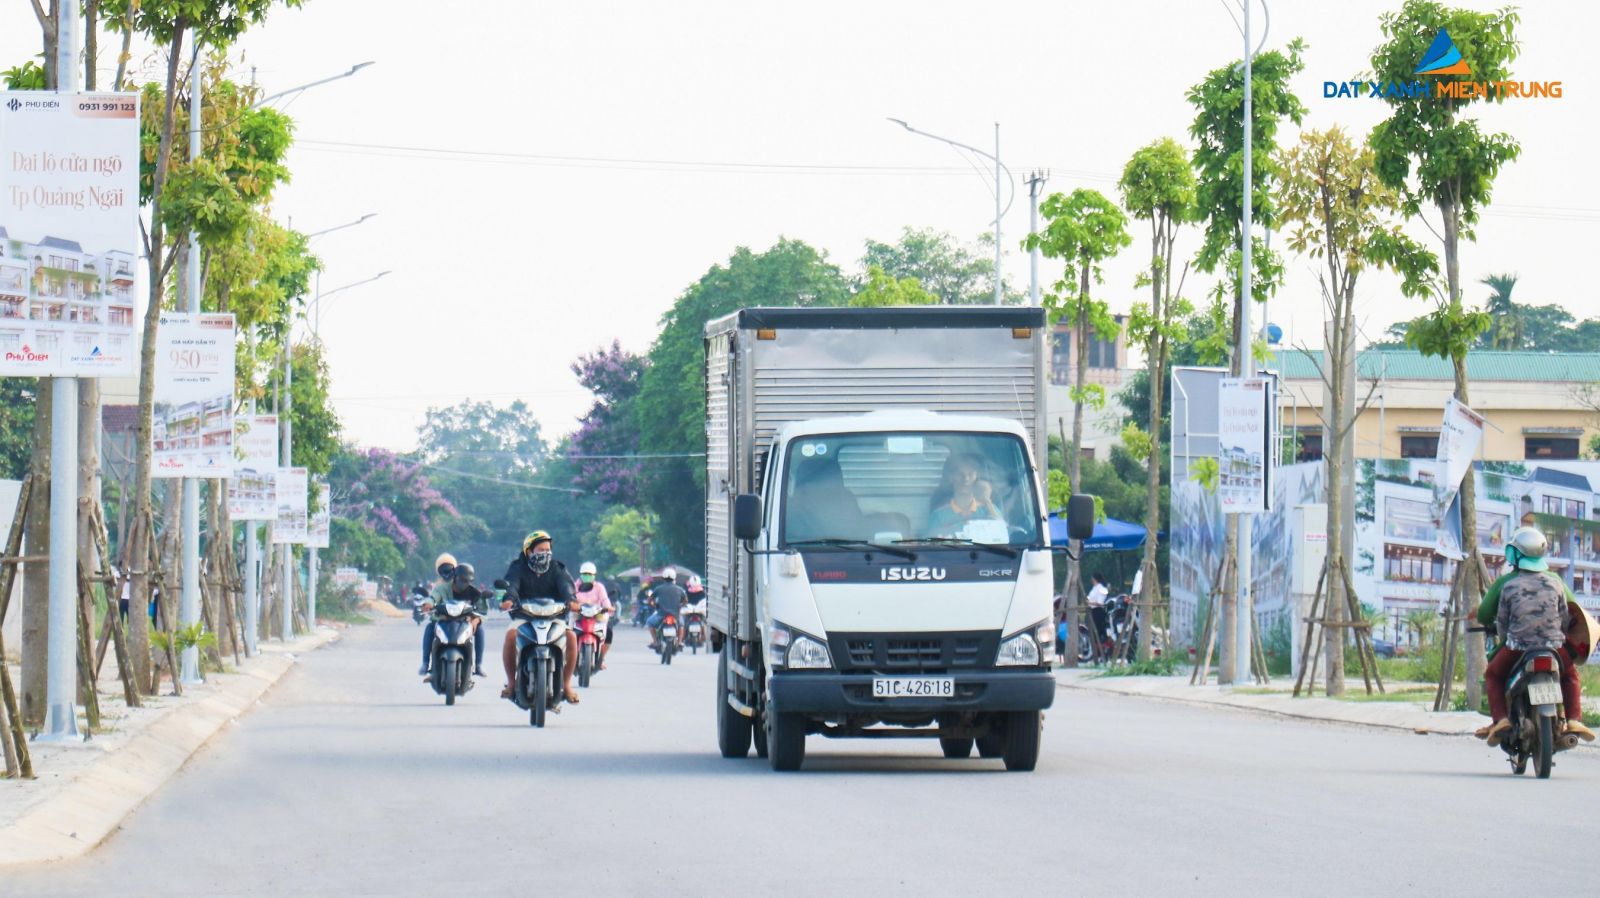 PHÚ ĐIỀN RESIDENCES TẤP NẬP TRONG LOẠT ẢNH CHỤP BUỔI CHIỀU MUỘN - Viet Nam Smart City